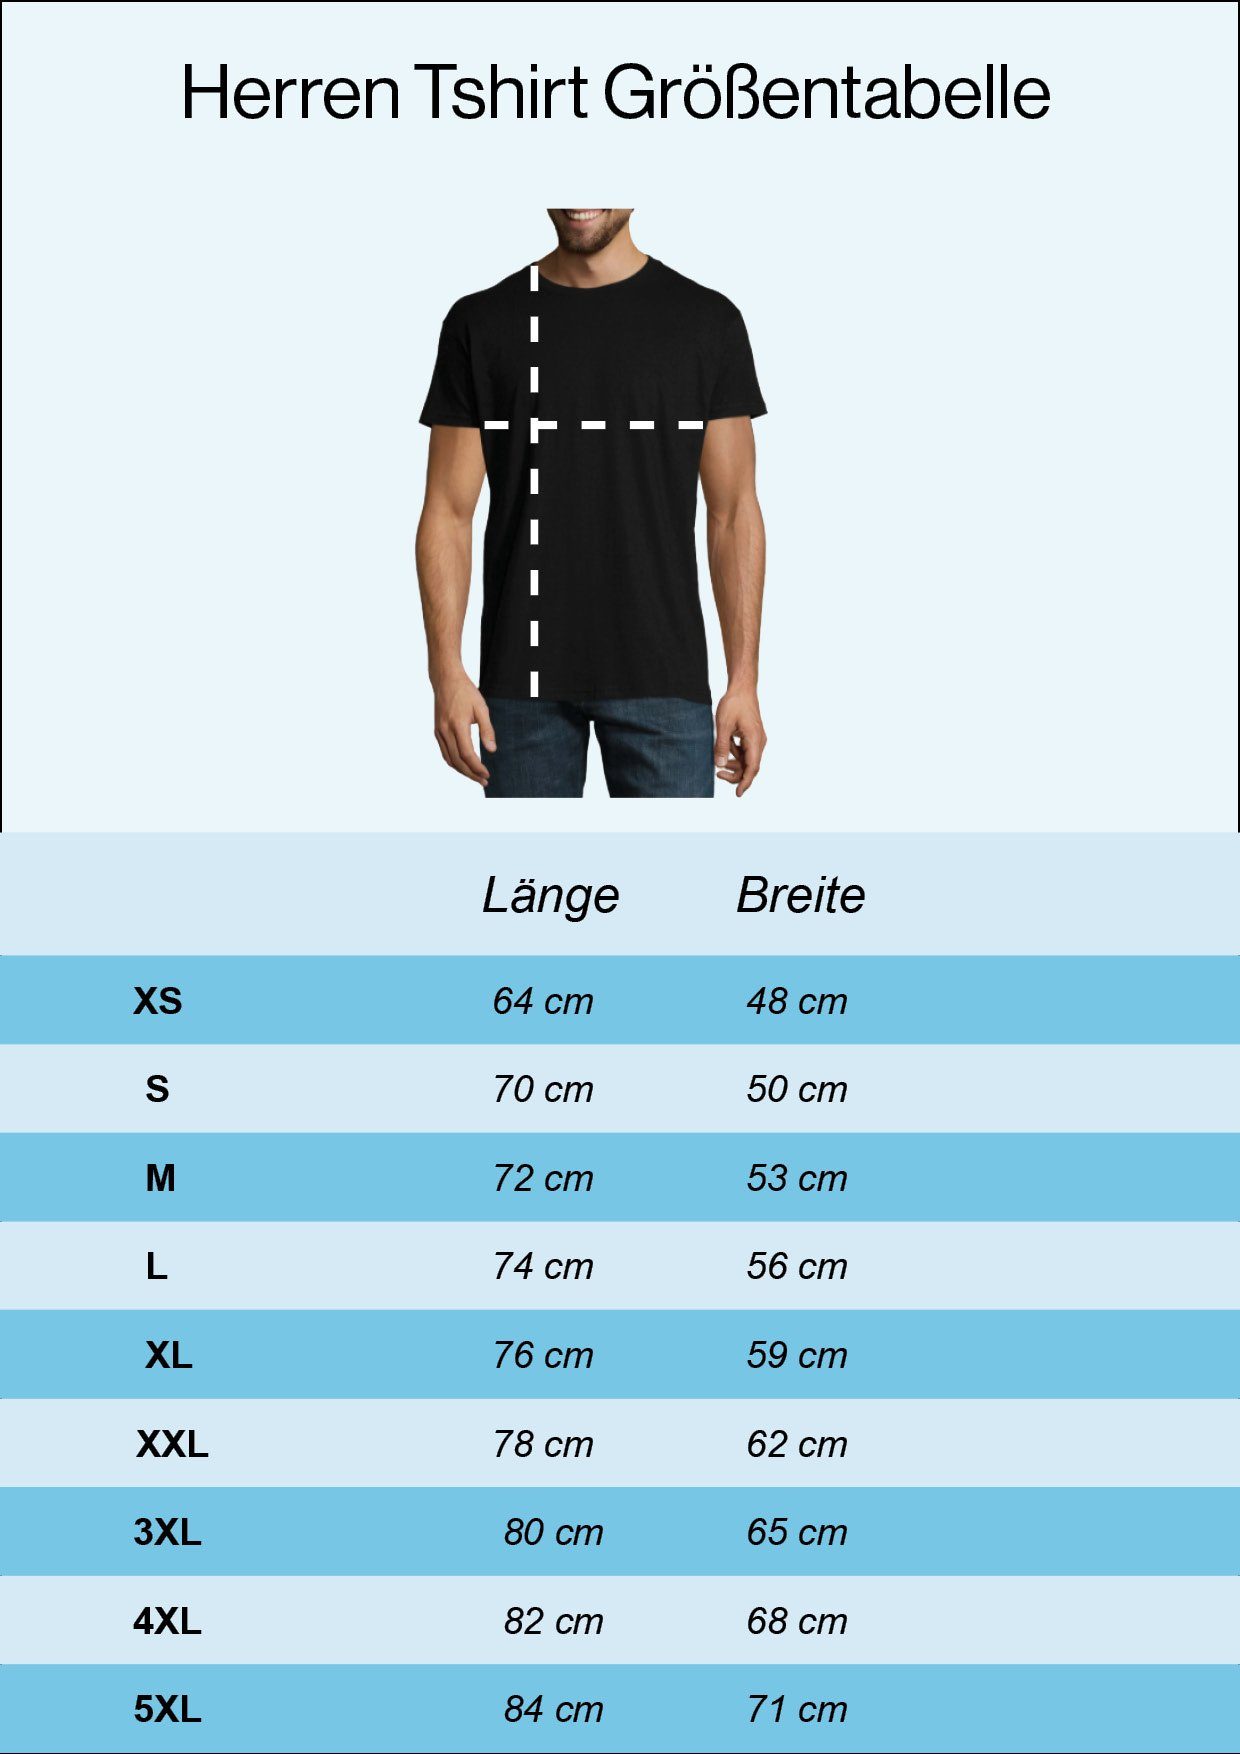 Youth Designz T-Shirt Bouldern Evolution Herren Schwarz Shirt mit Frontprint trendigem